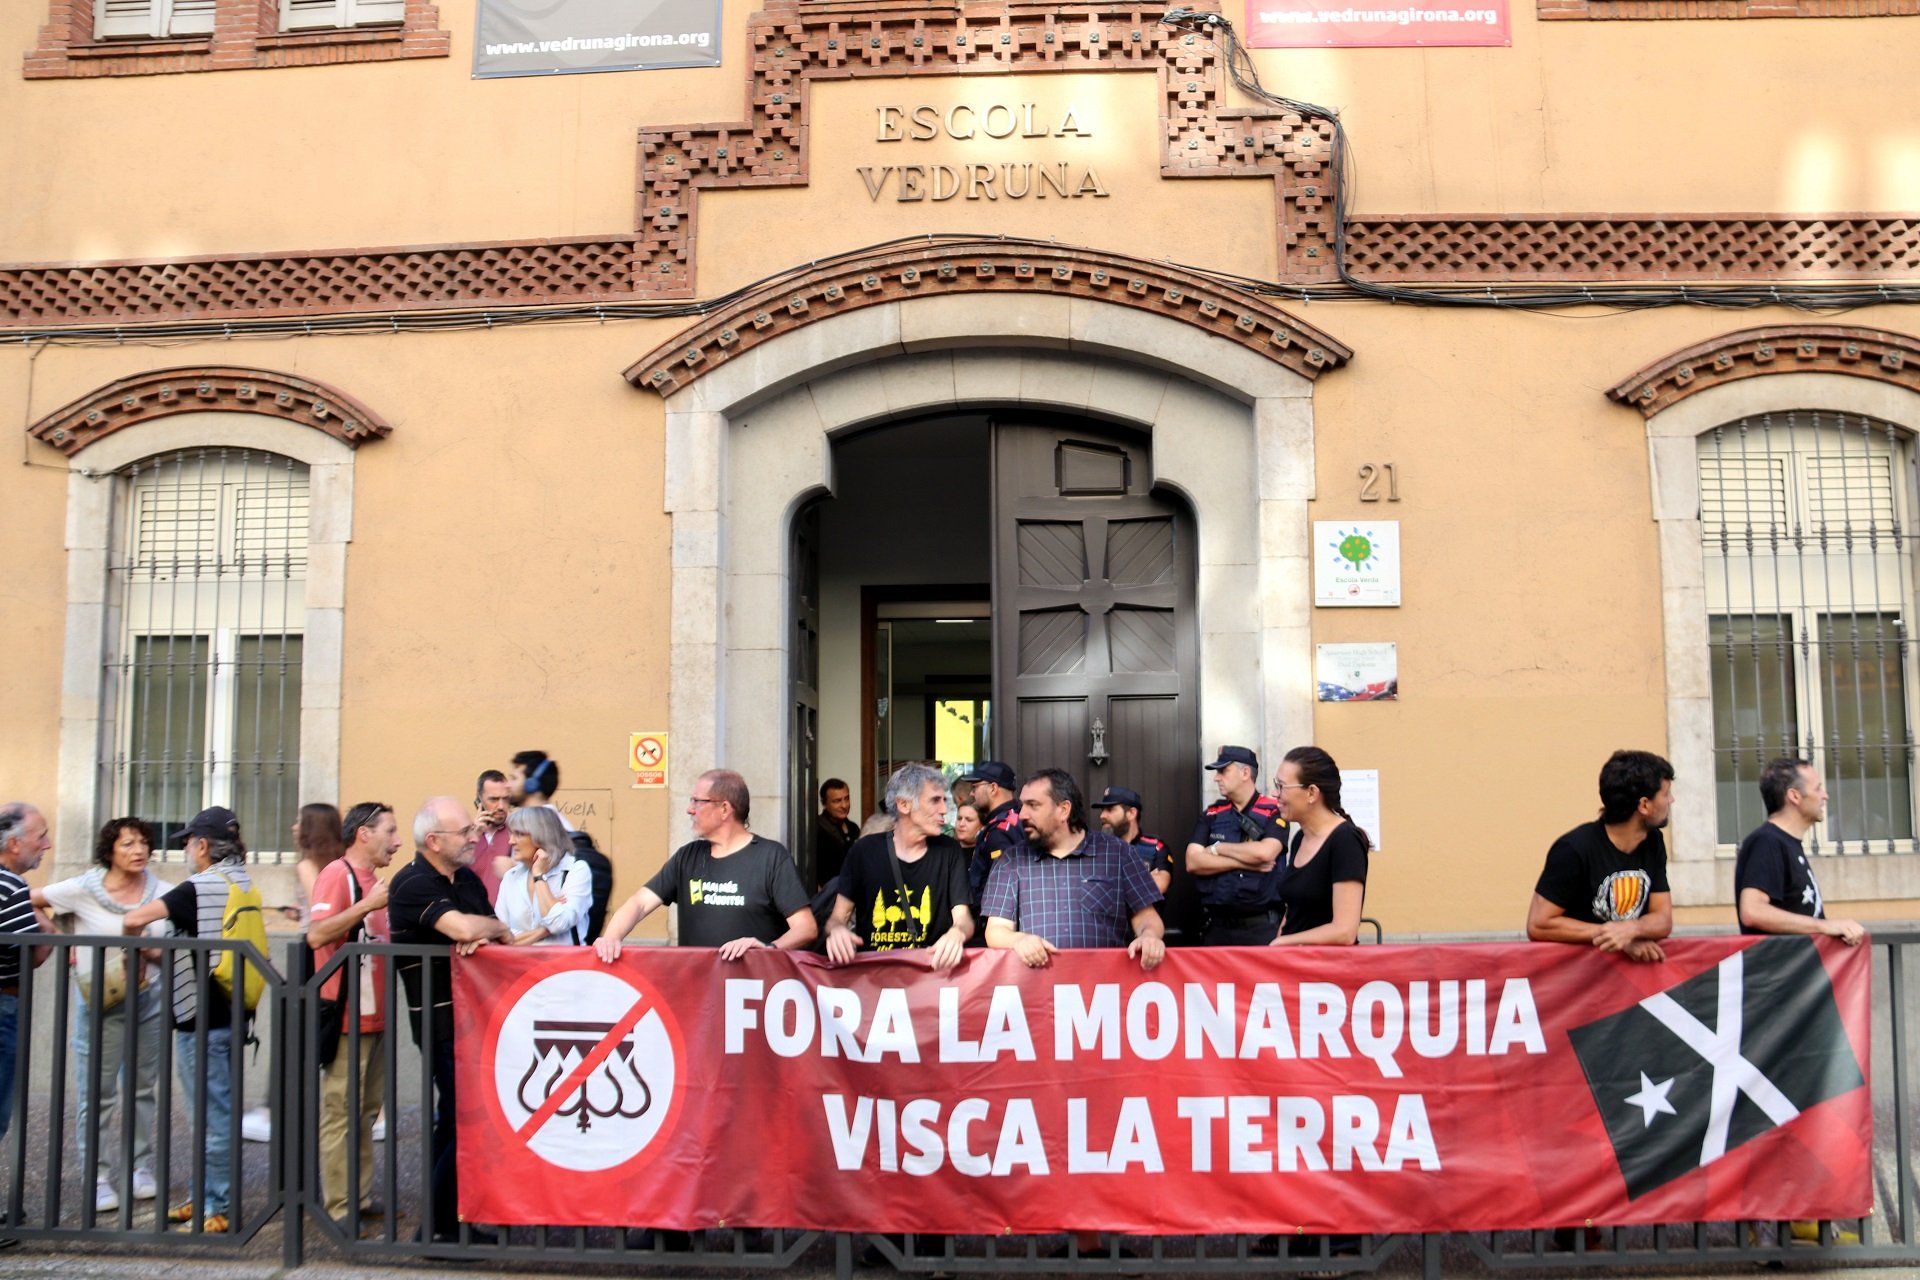 Suspendido un acto de la Fundación Princesa en un colegio de Girona tras recibir quejas